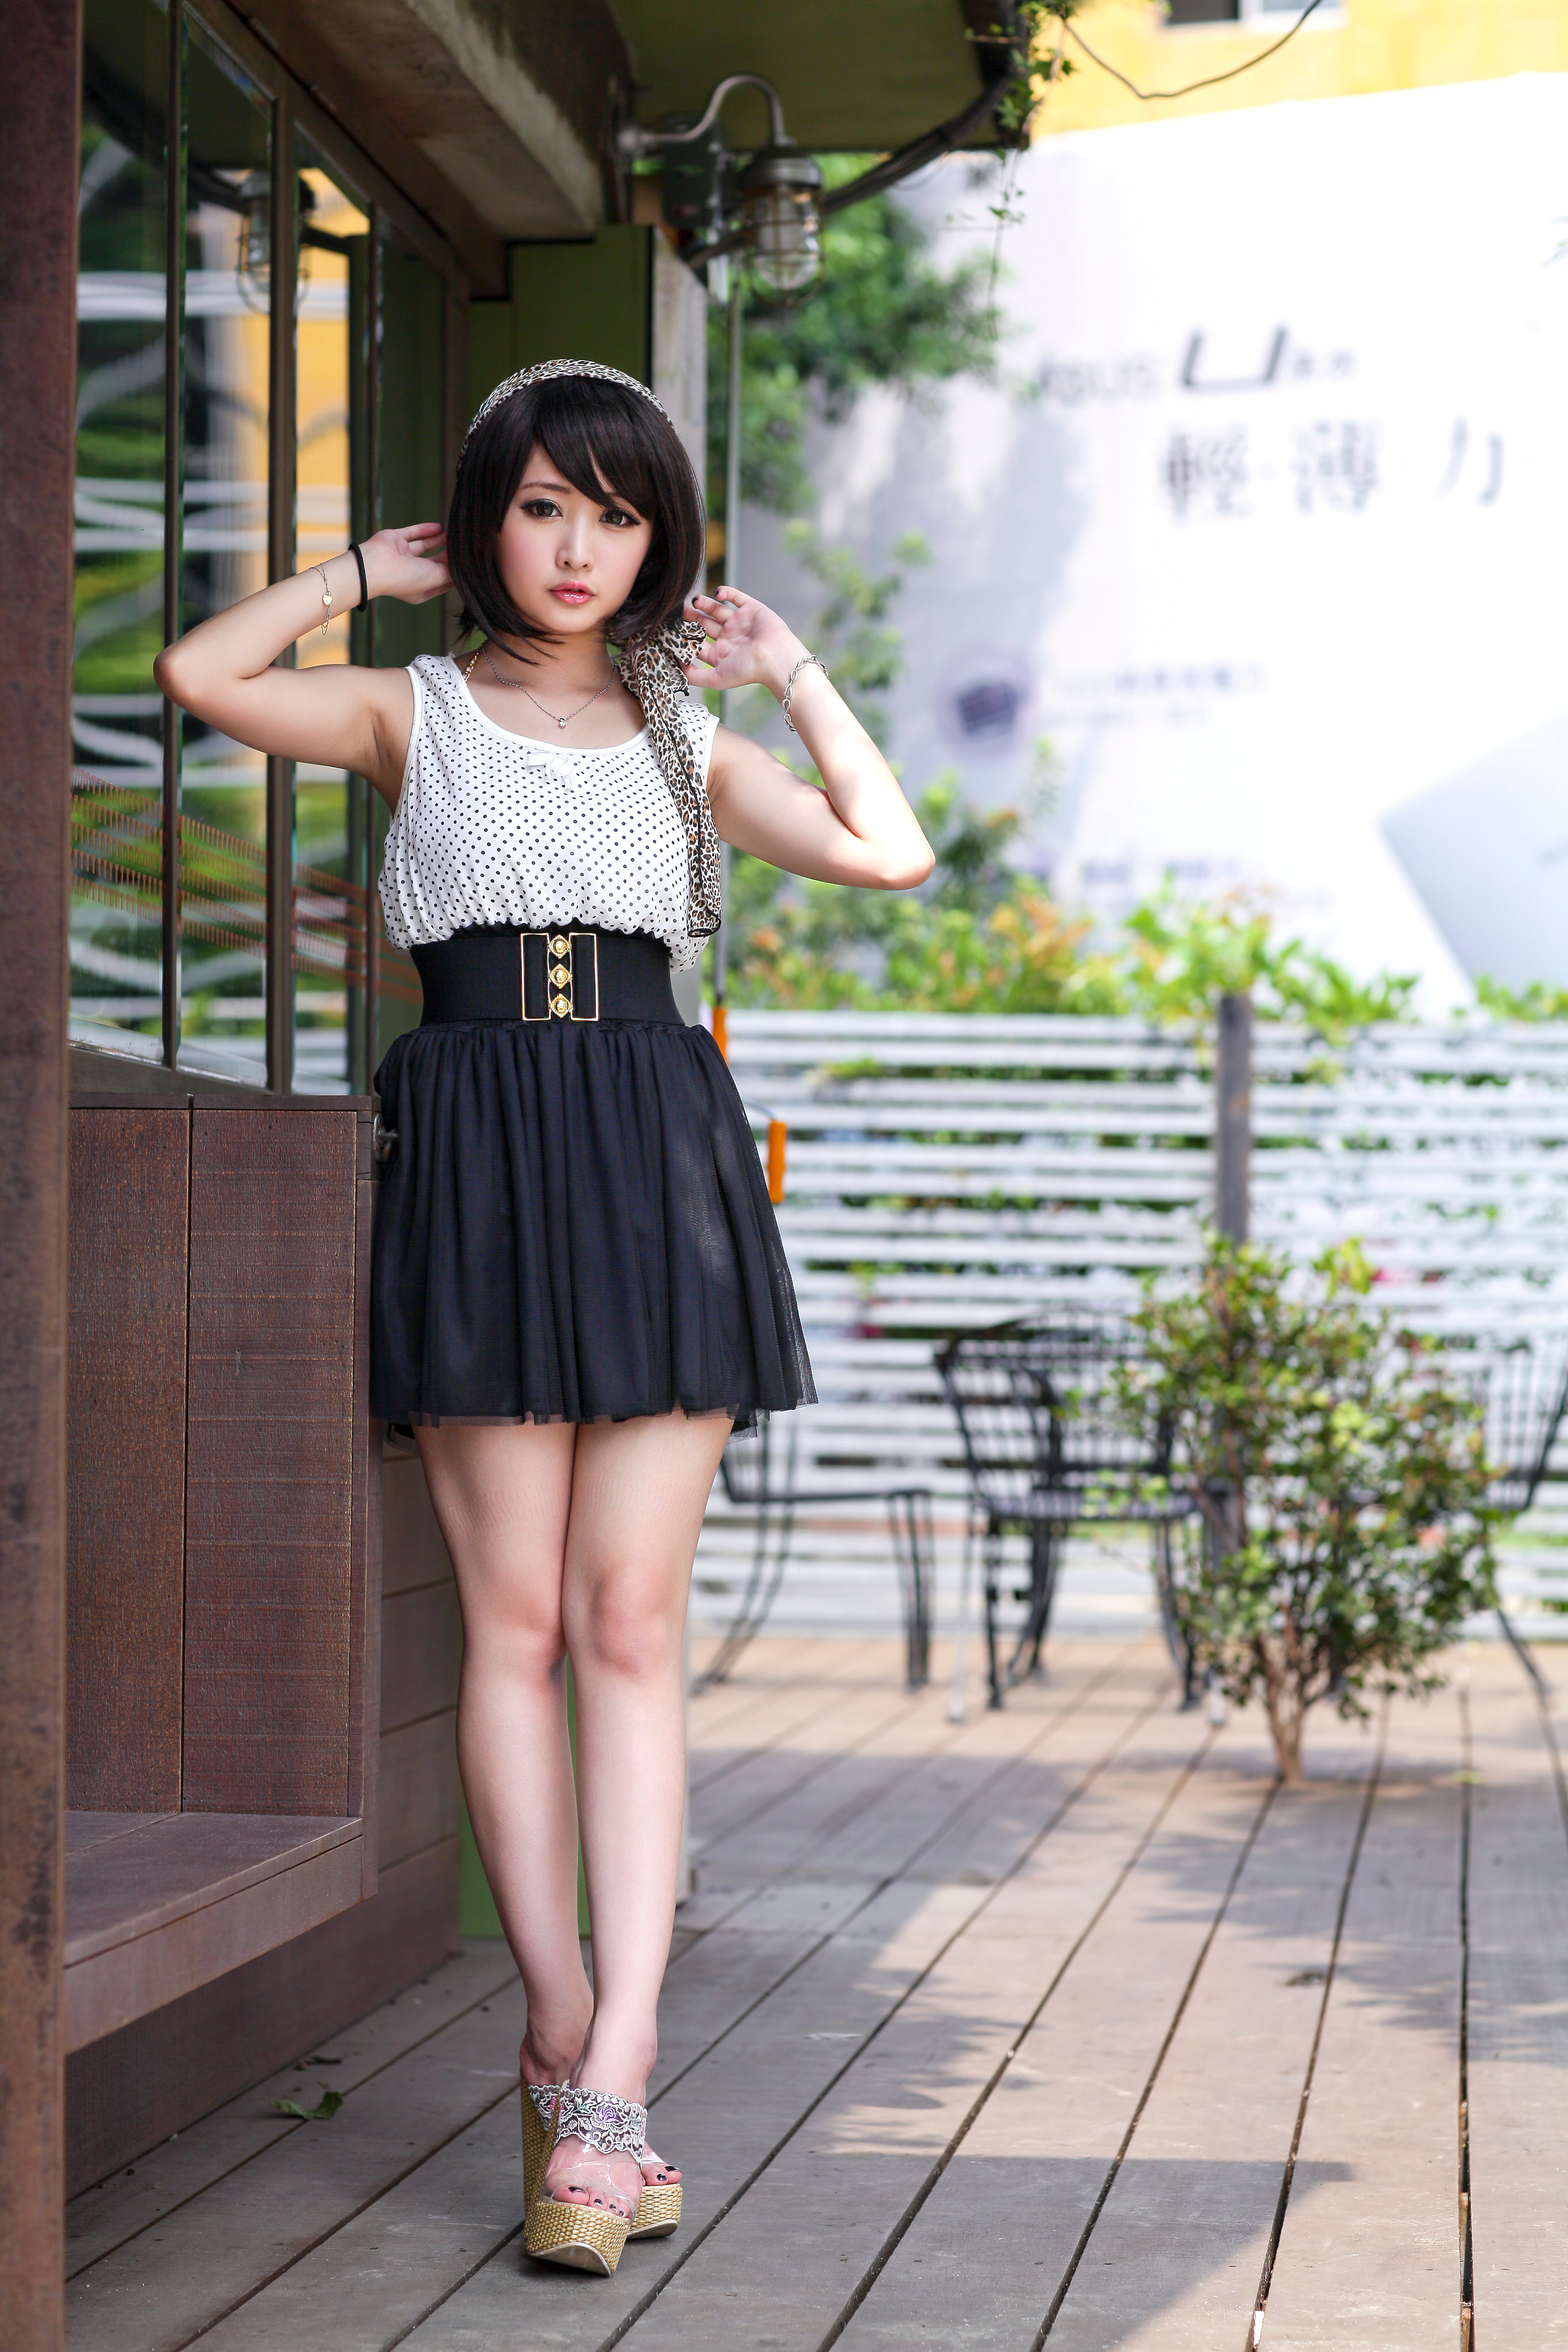 Asian Model Women Long Hair Dark Hair Women Outdoors Standing Legs Skirt Black Hair Makeup Looking A 2560x3840